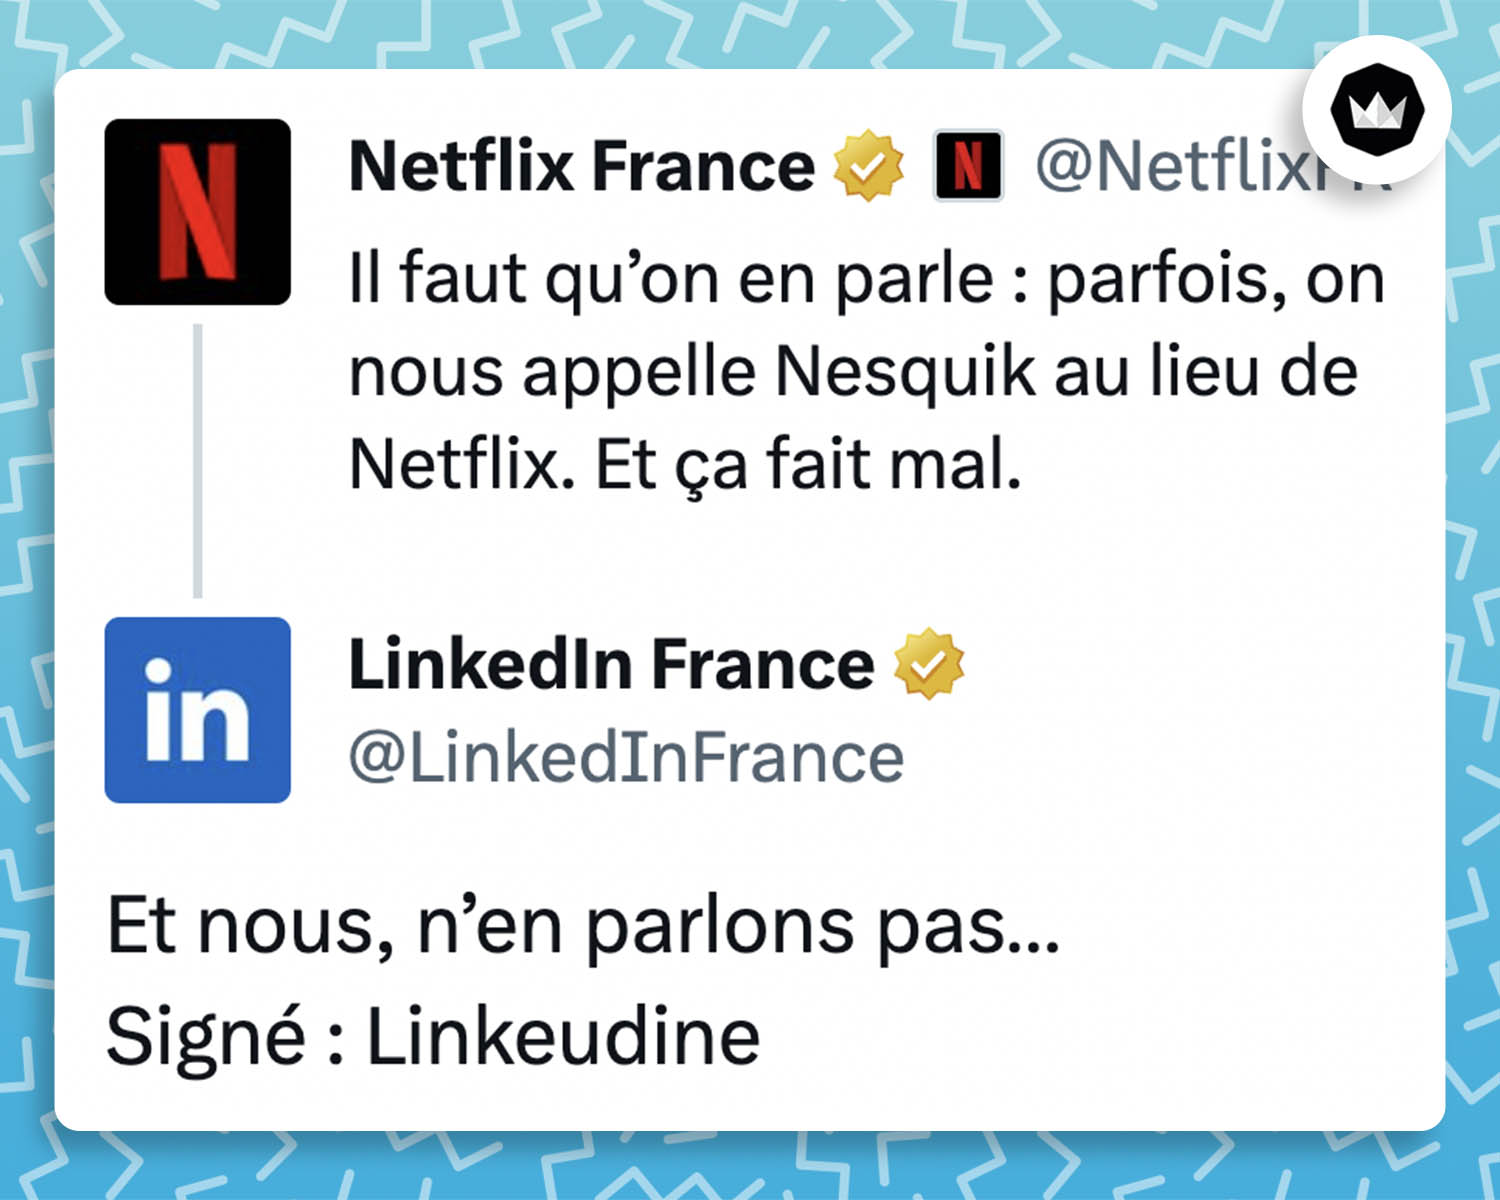 @netflixfr : "Il faut qu'on en parle : parfois on nous appelle Nesquik au lieu de Netflix. Et ça fait mal." @LinkedInFrance : "Et nous, n'en parlons pas. Signé Linkeudine."